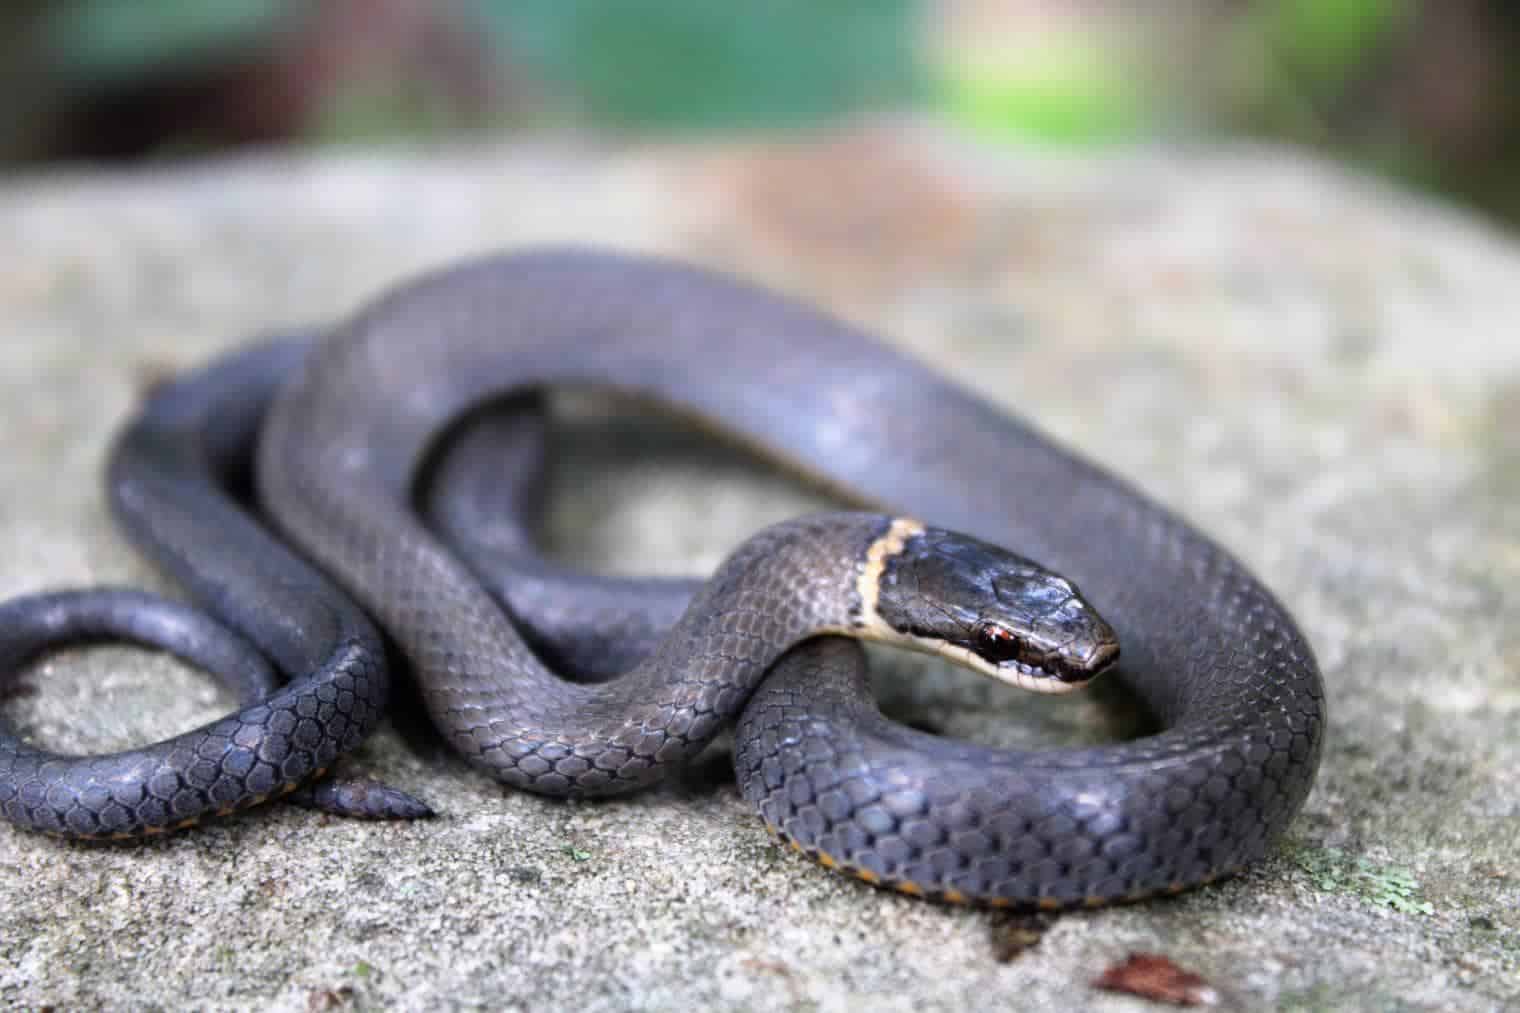 Ring-necked snake_Tucker Heptinstall_Shutterstock